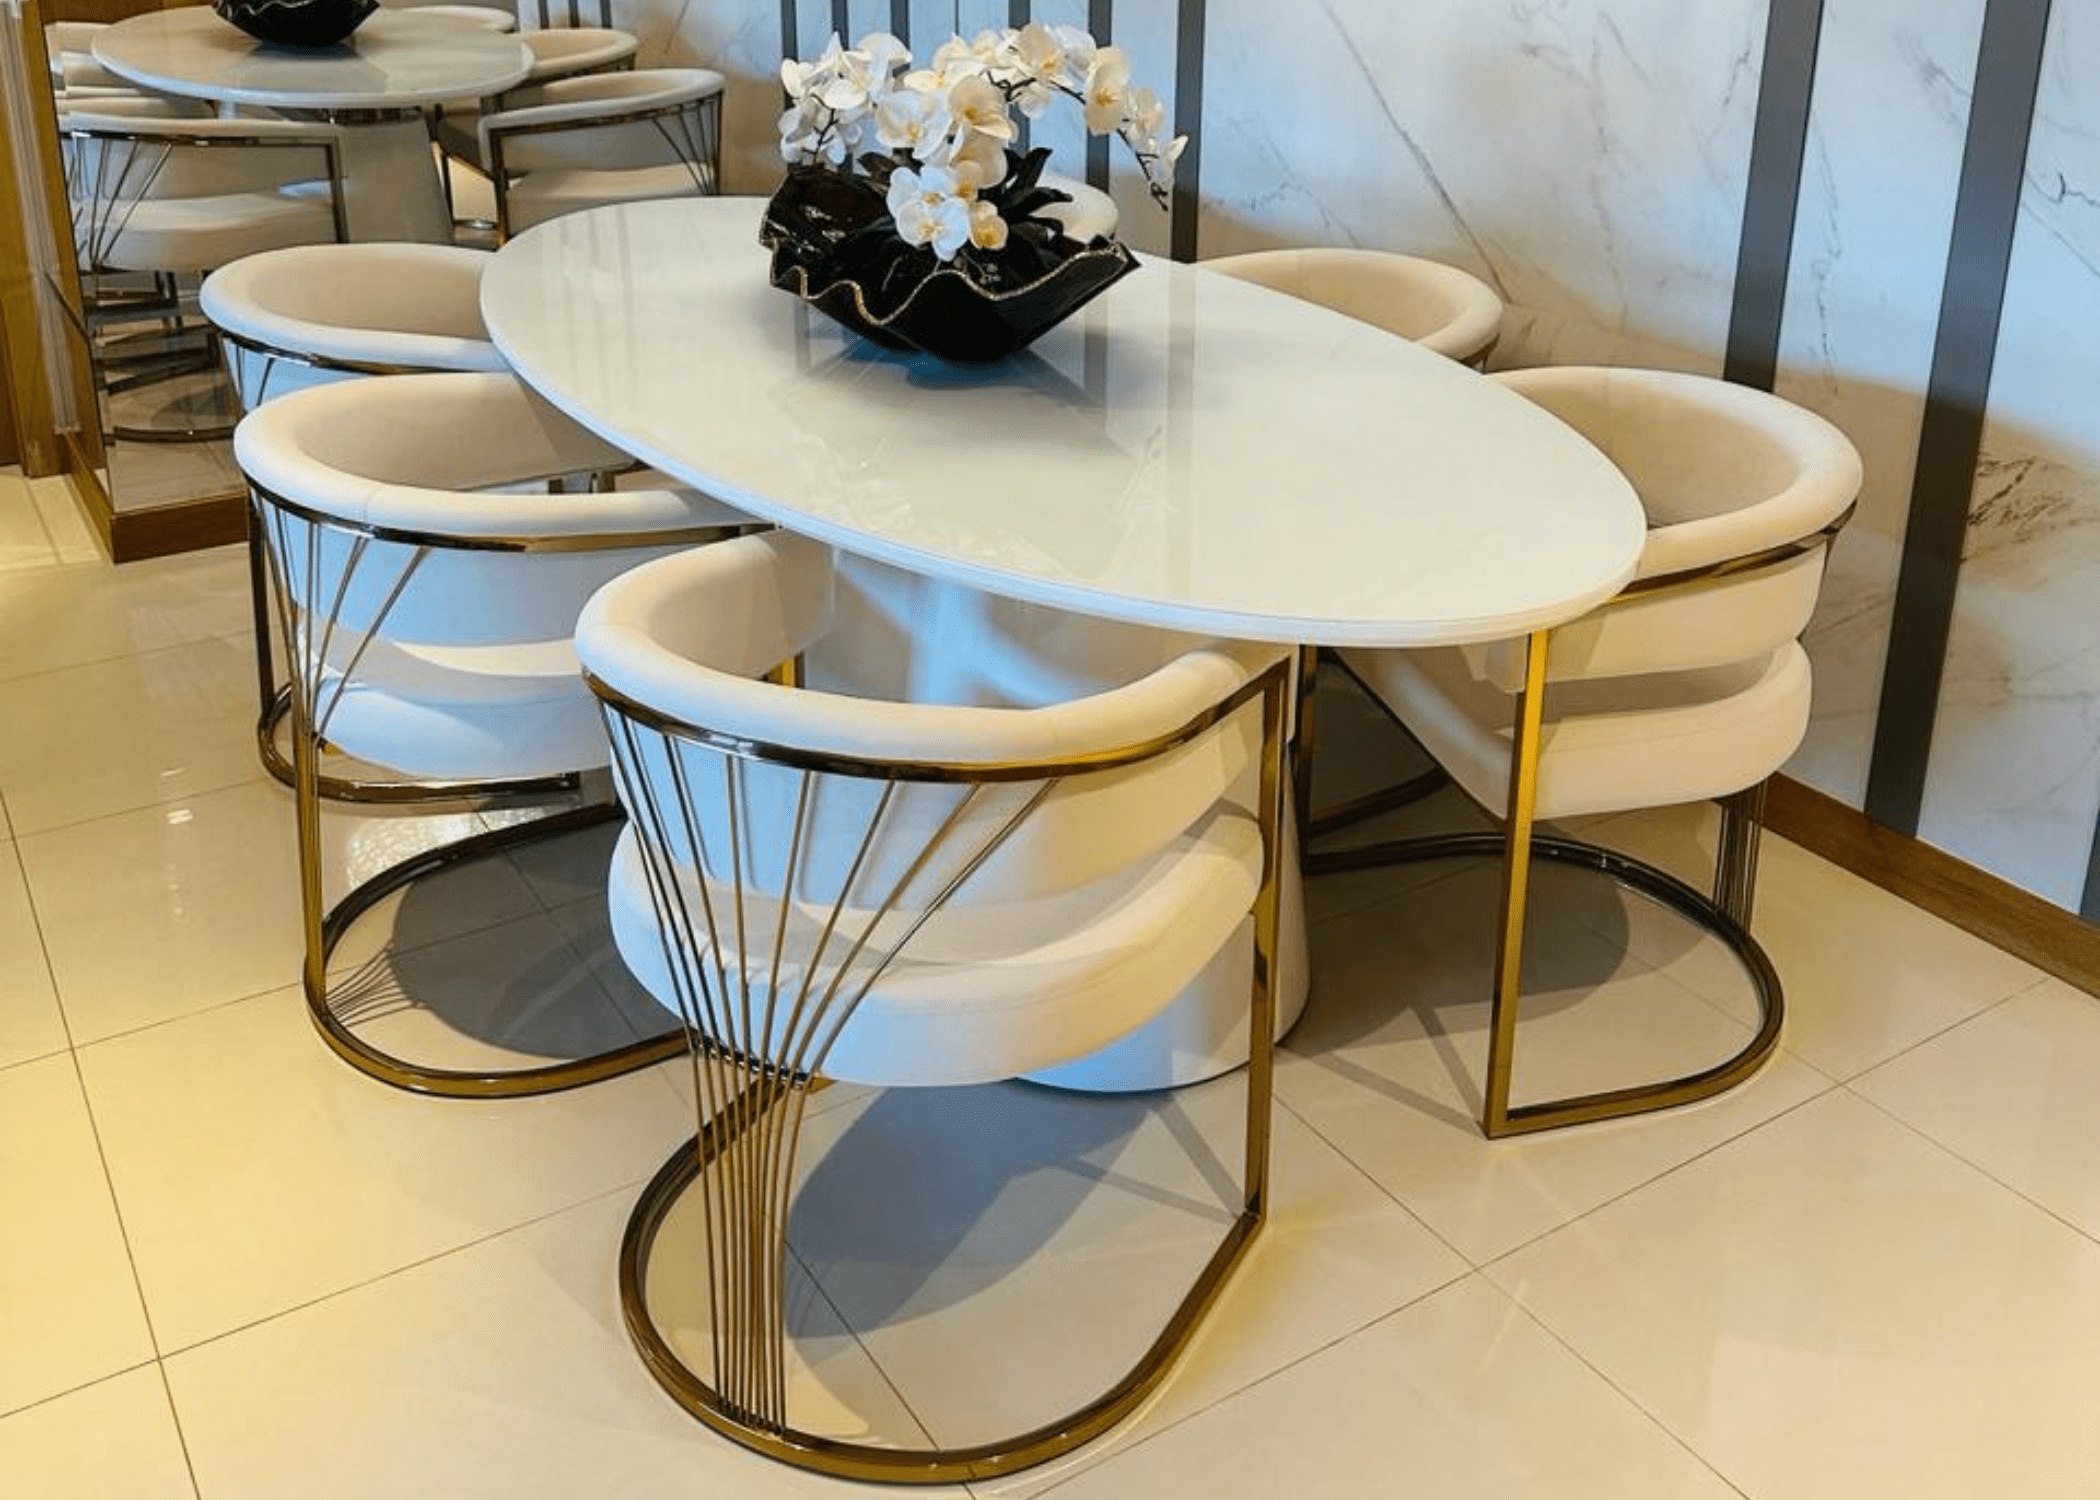 Cadeira Estaiada: Combinação de estilo contemporâneo e clássico, estrutura em aço inox, espuma densidade 33, conforto ideal para longos jantares e design sofisticado.